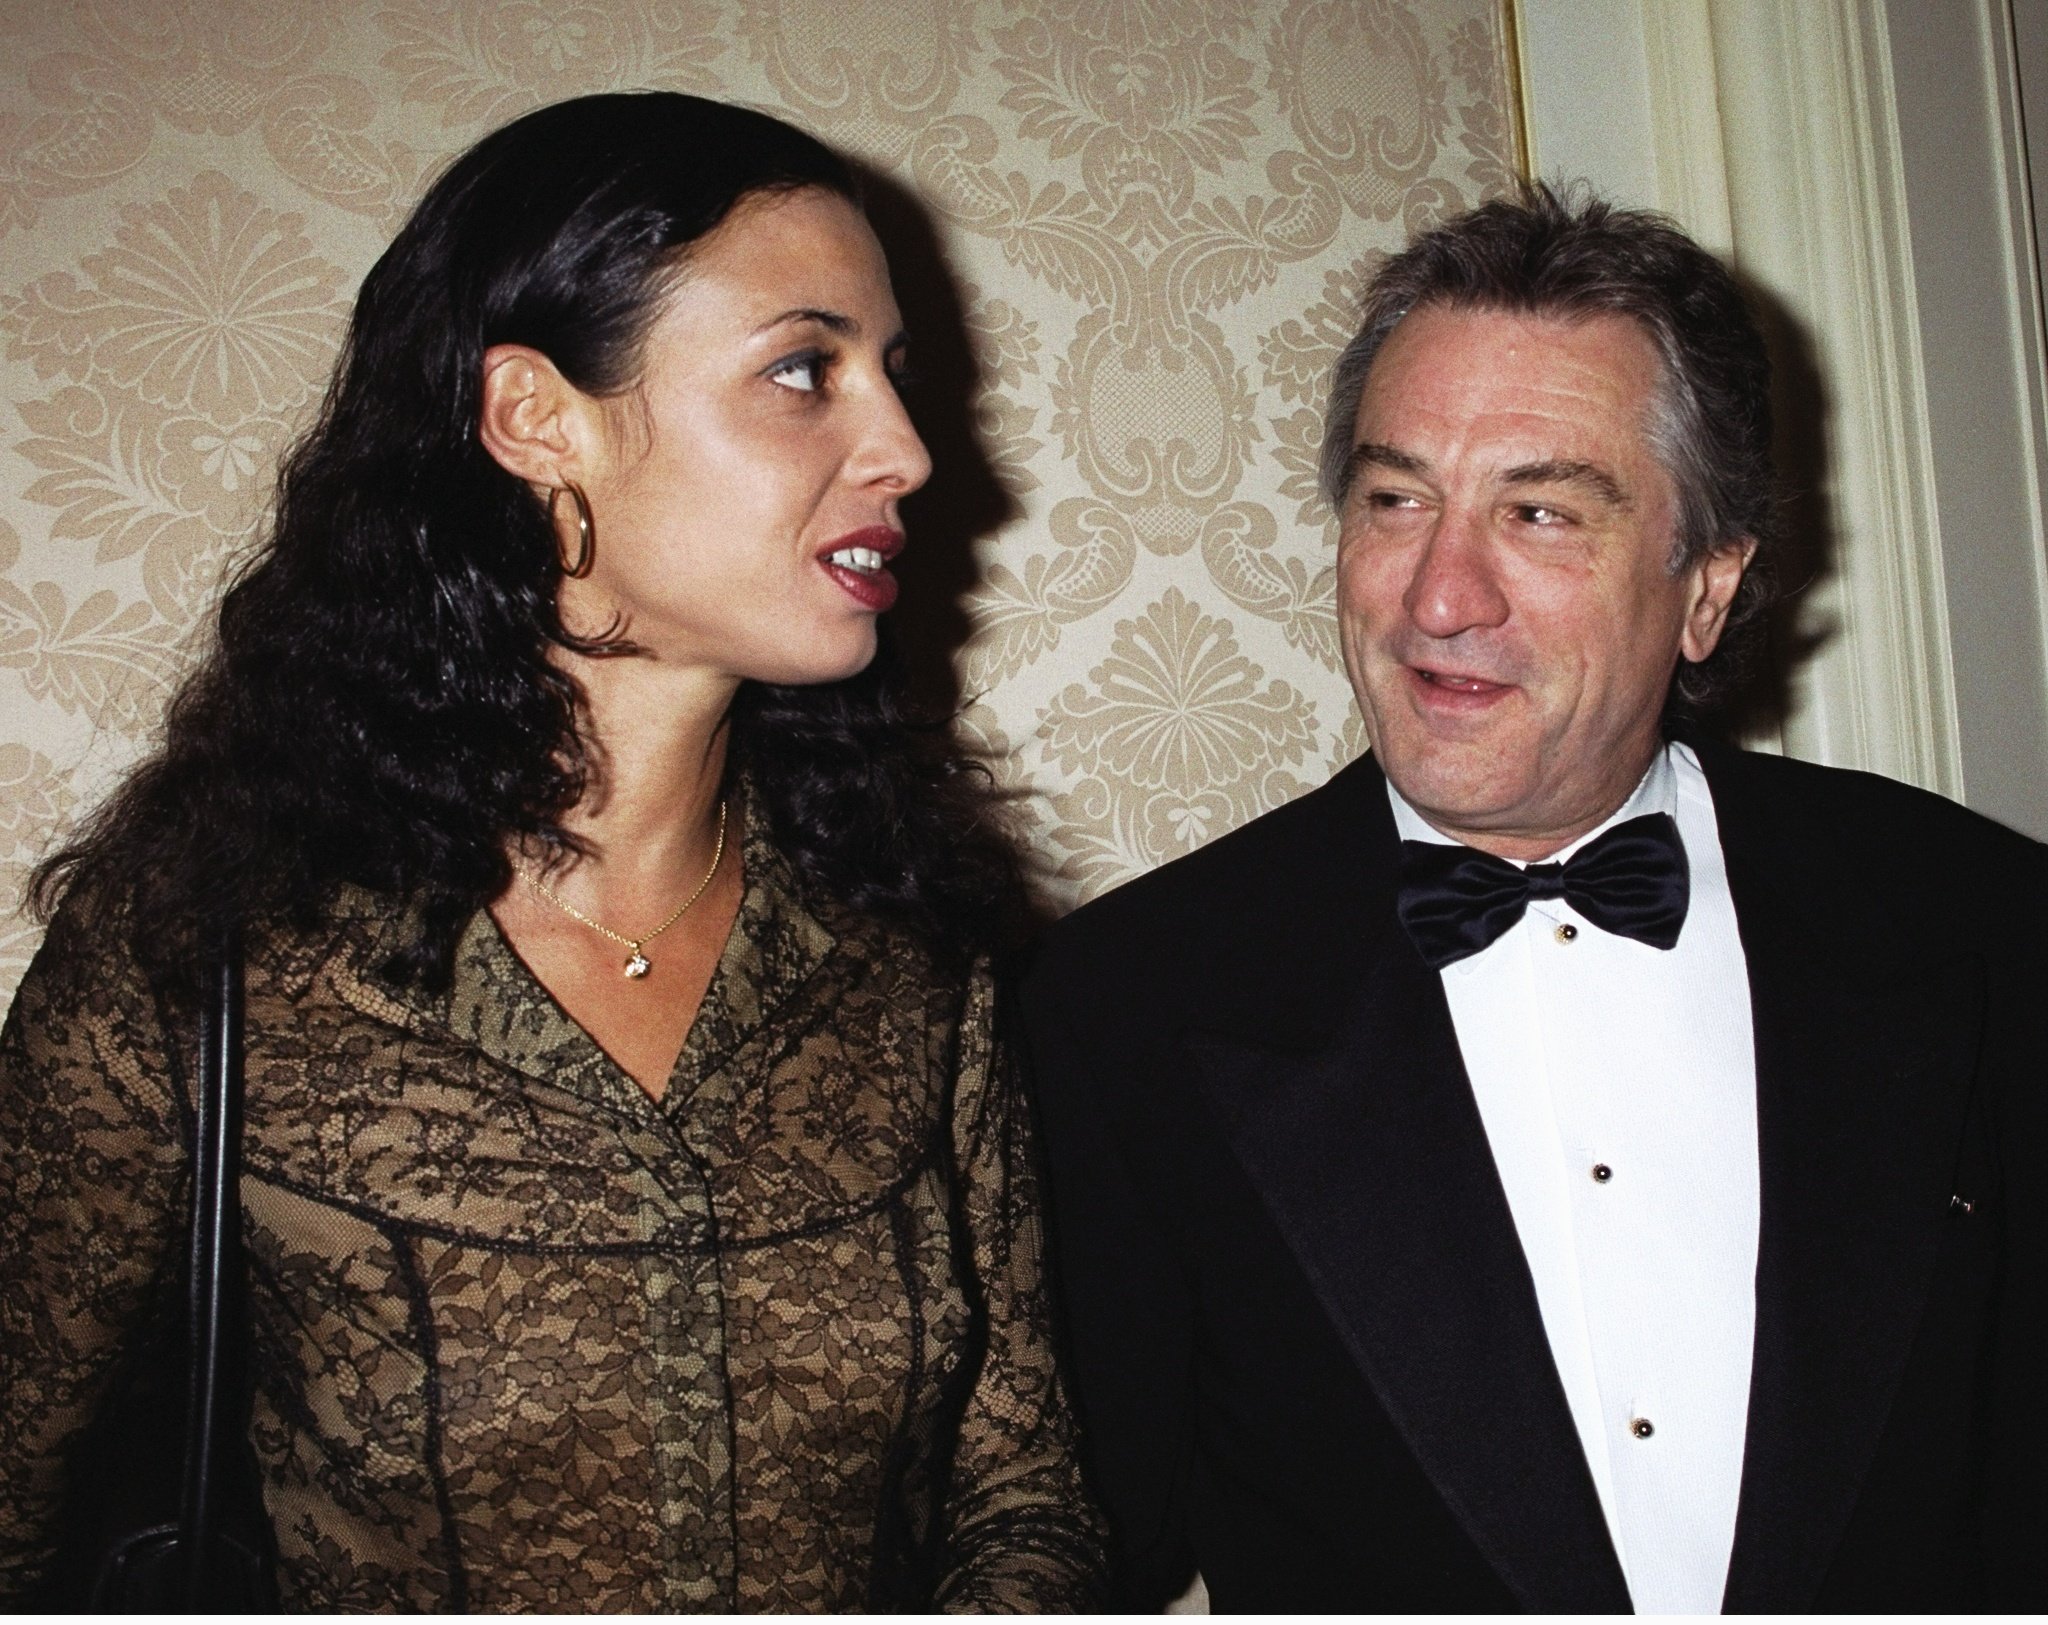 Robert De Niro and daughter Drena De Niro in 2000 in New York | Source: Getty Images